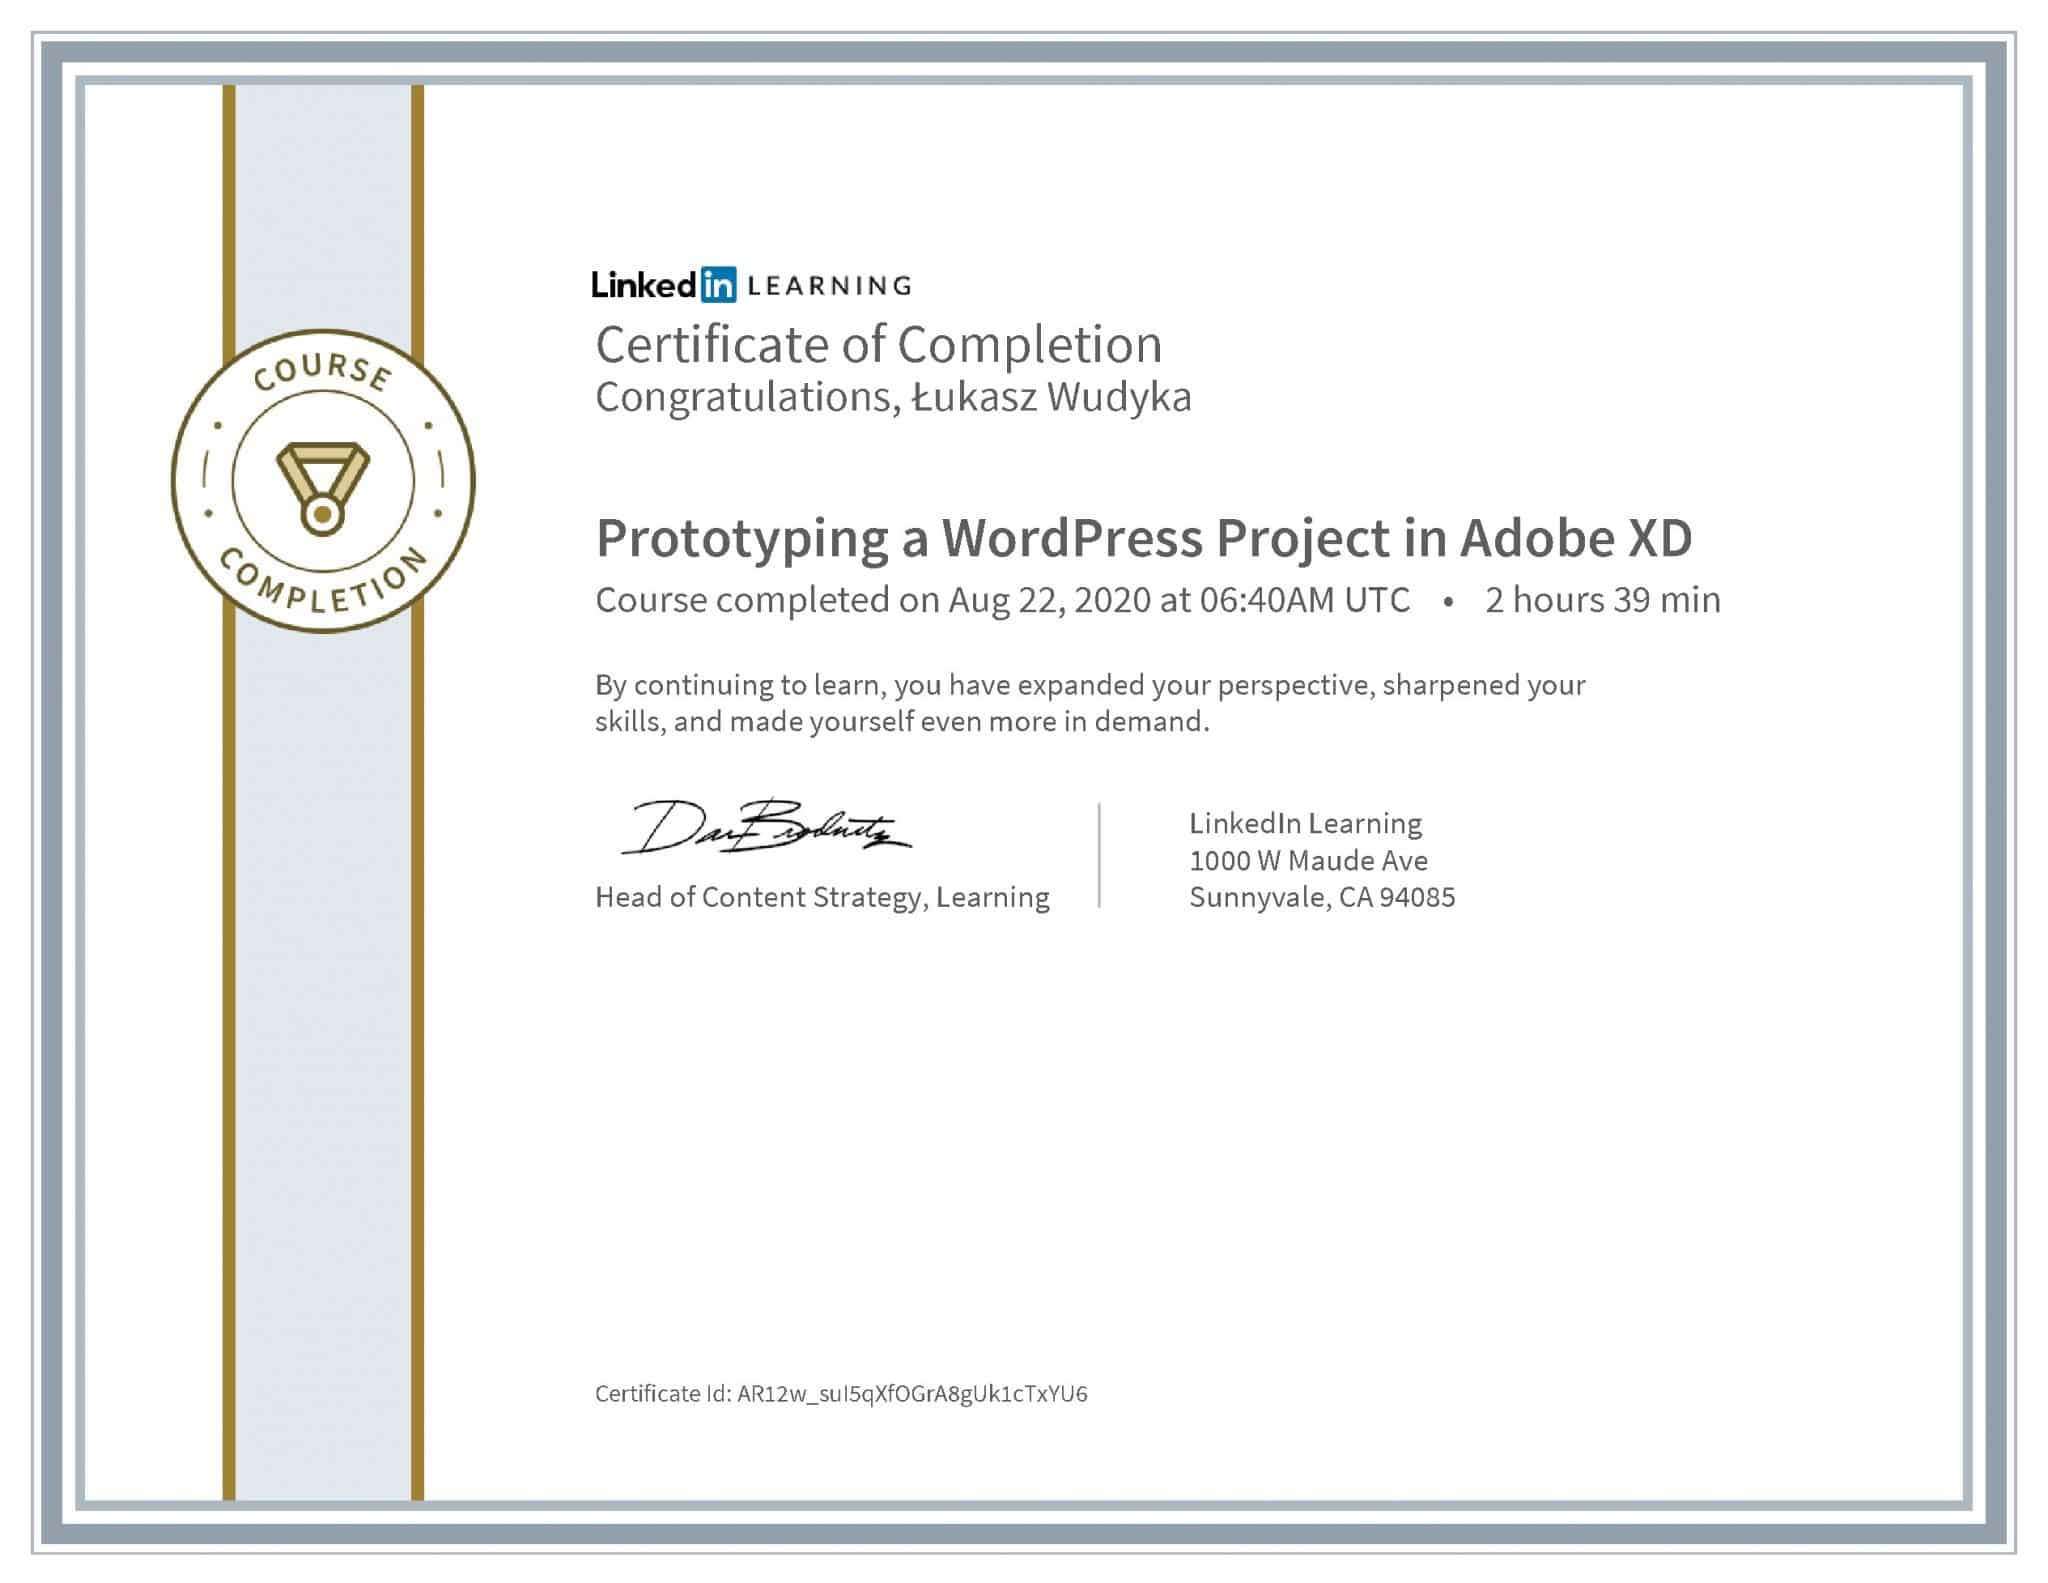 Łukasz Wudyka certyfikat LinkedIn Prototyping a WordPress Project in Adobe XD